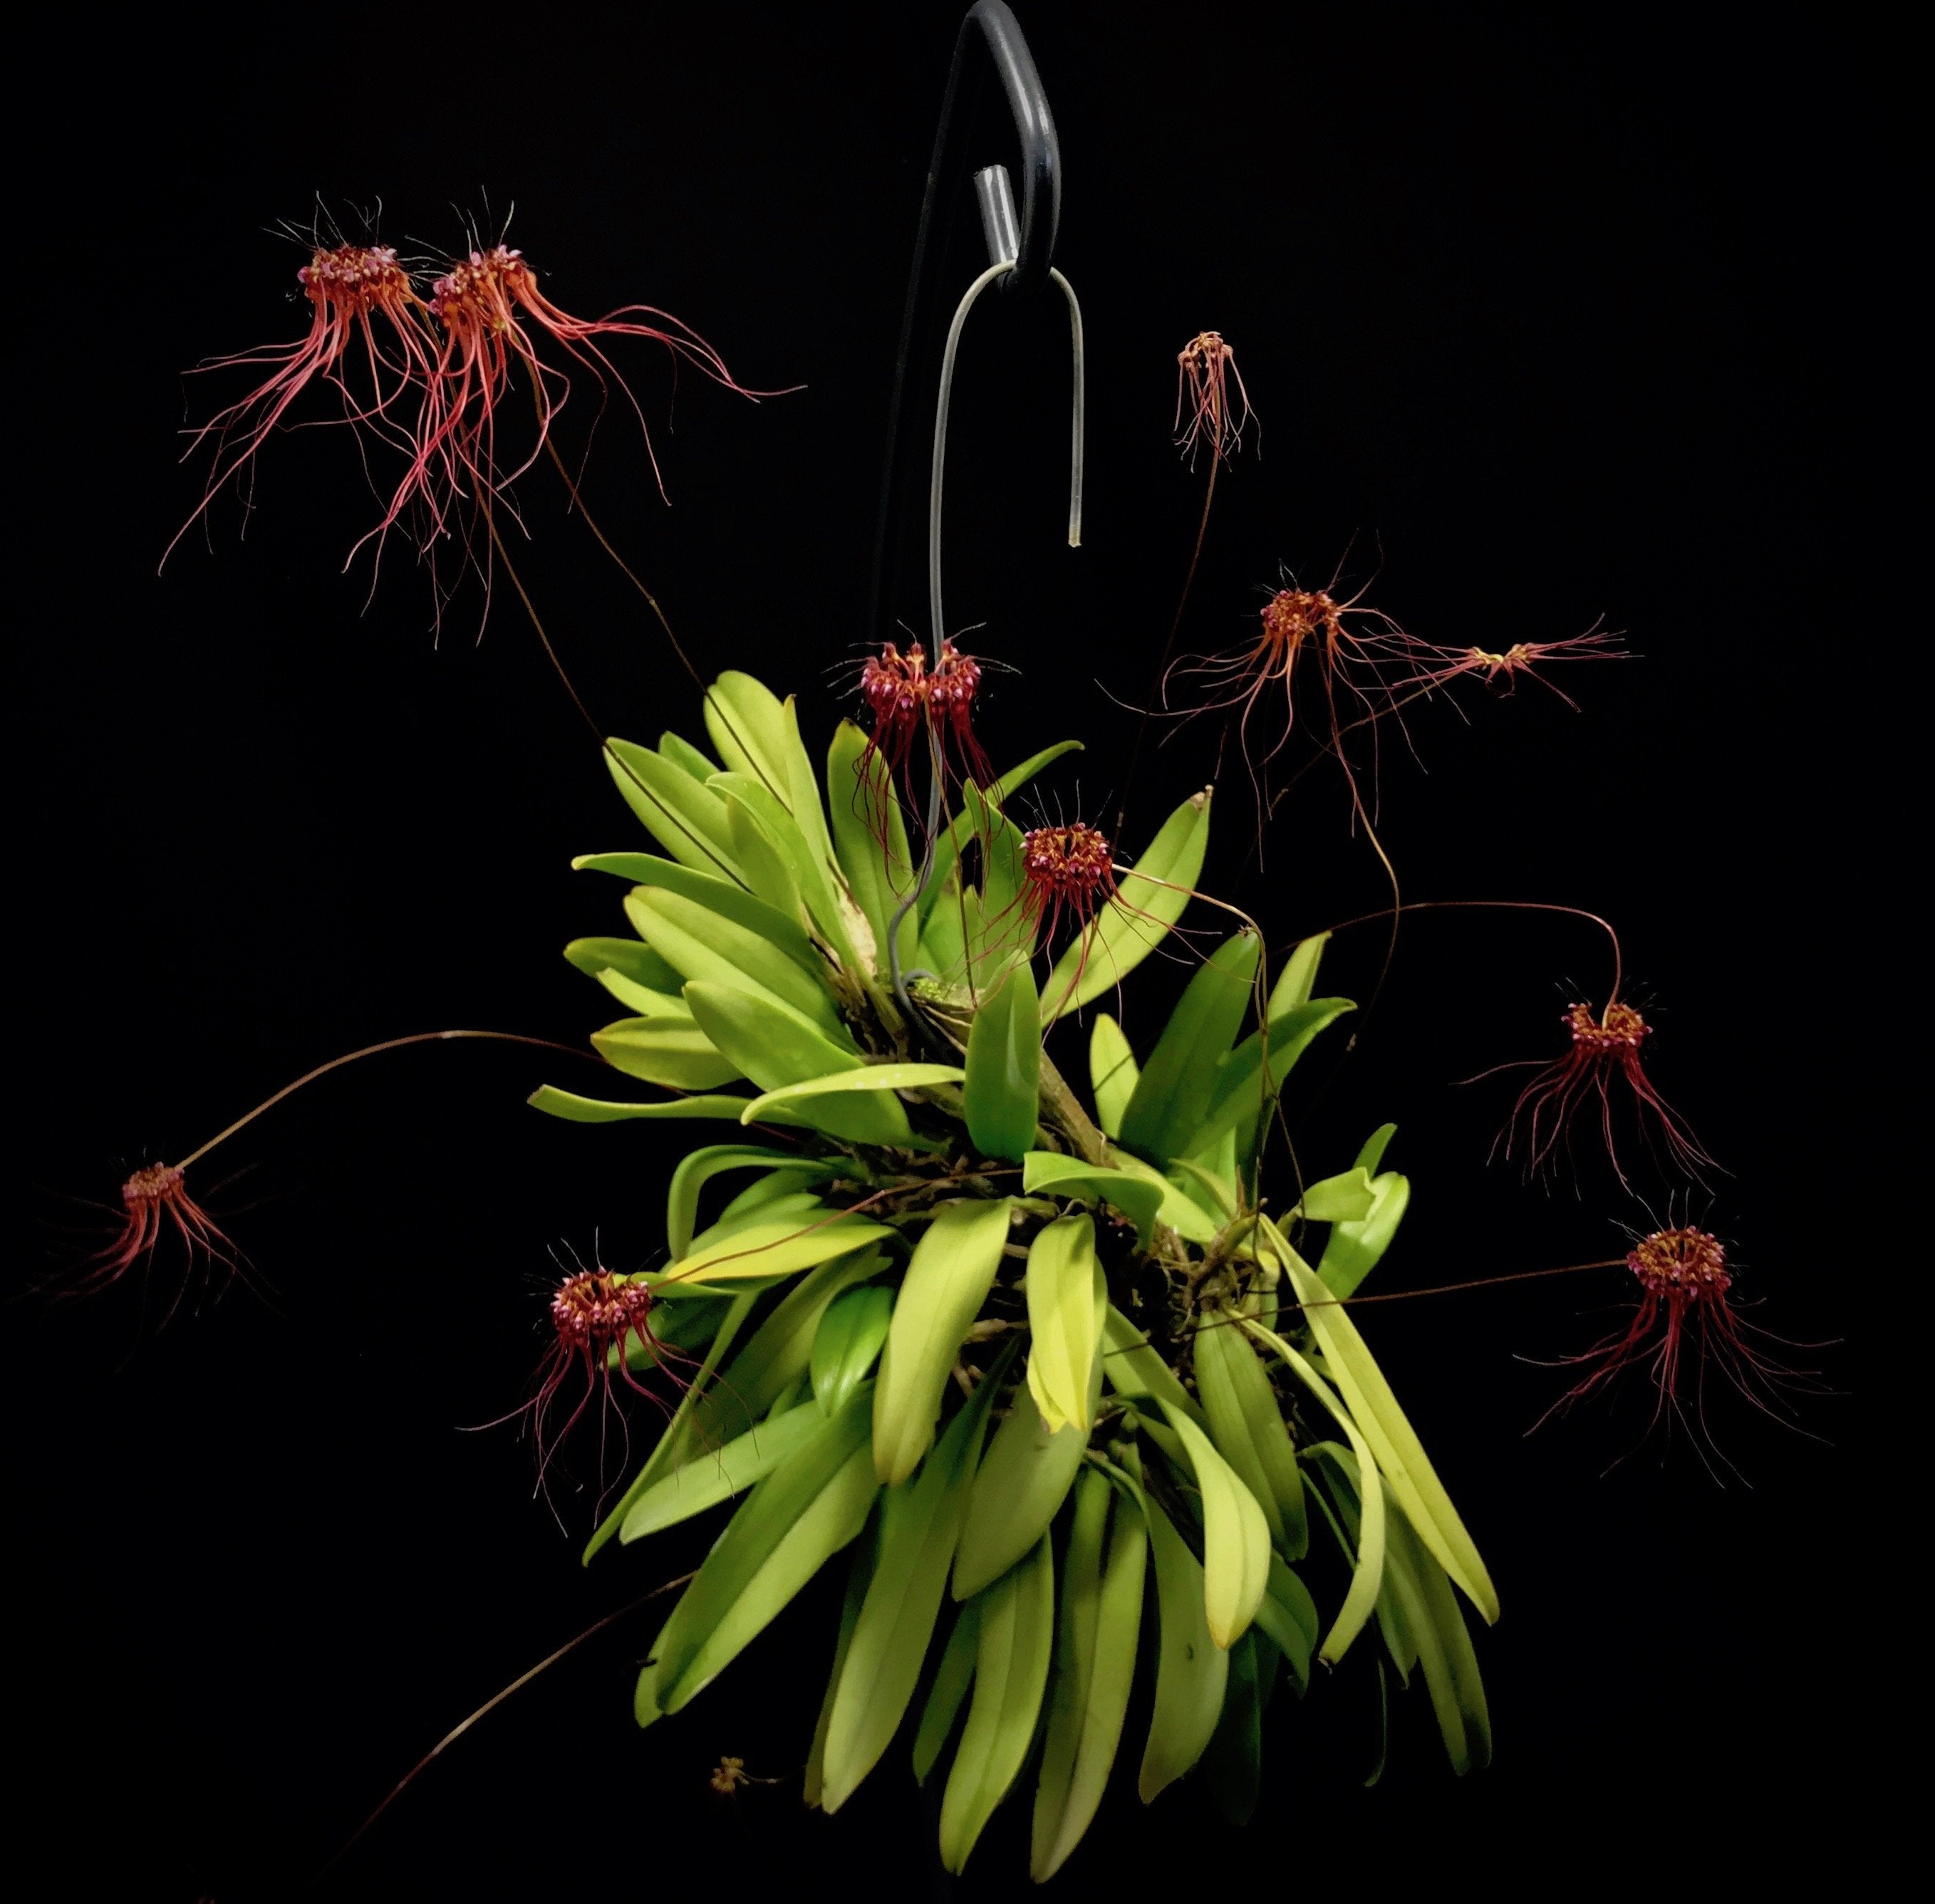 Bulbophyllum gracillimum "Big"